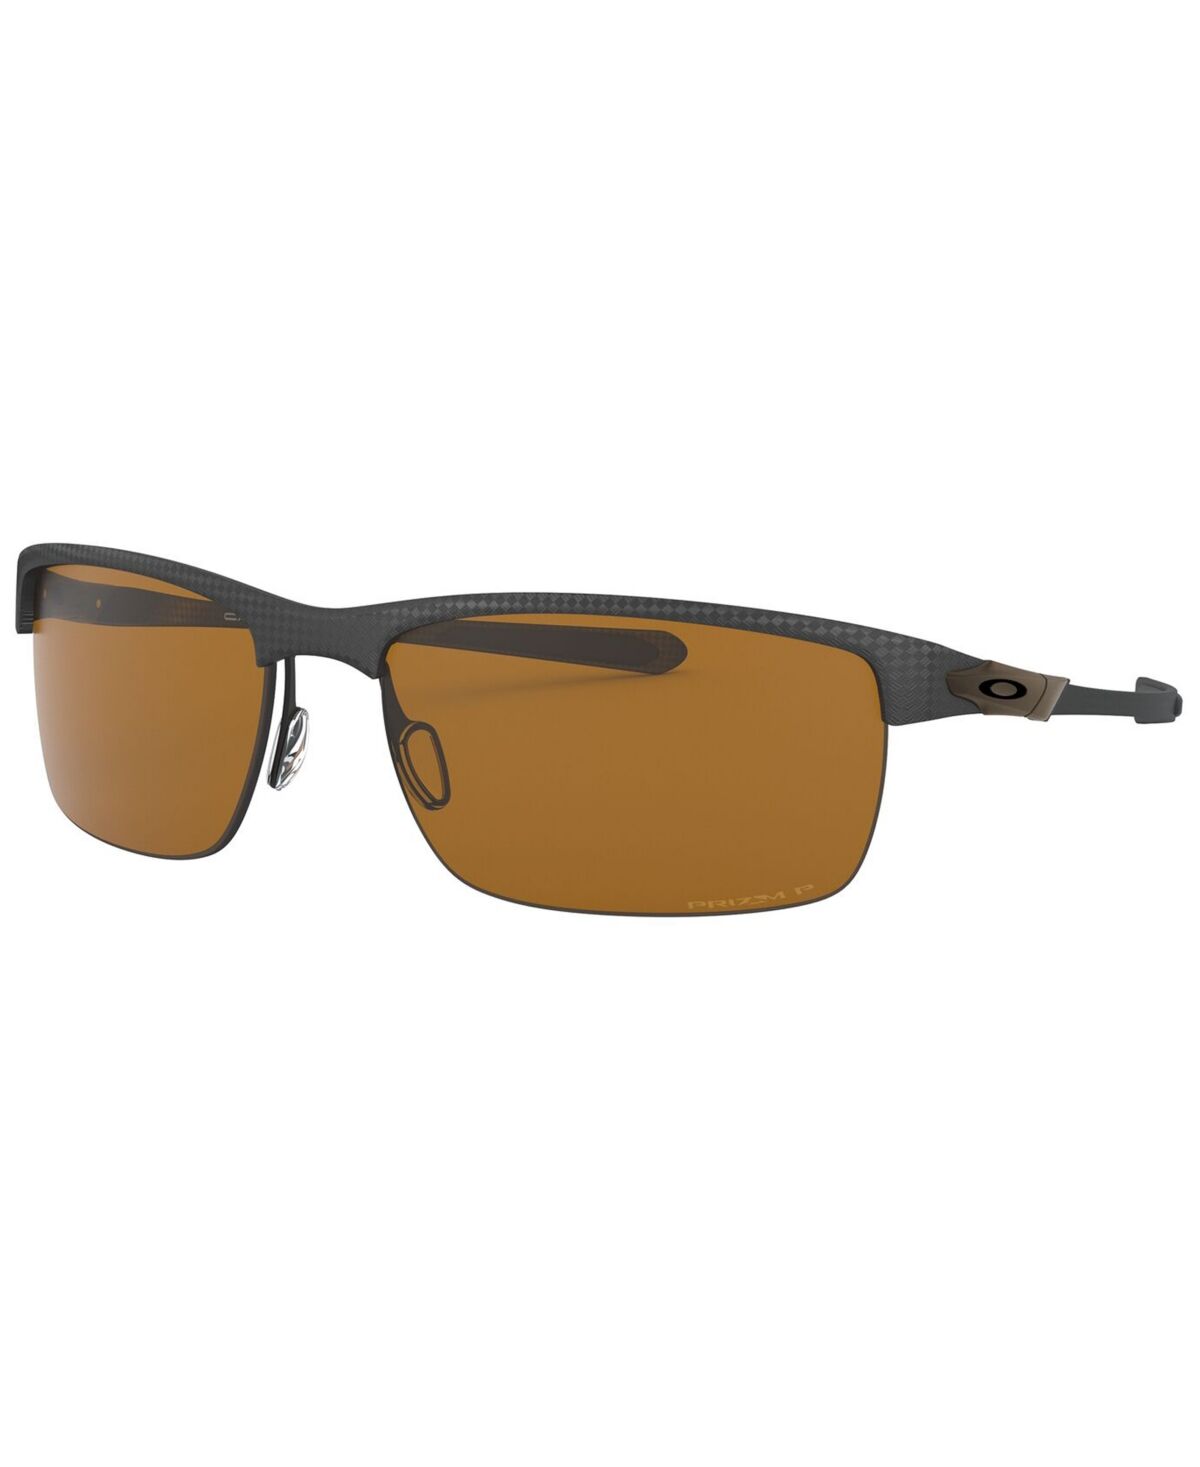 Oakley Carbon Blade Polarized Sunglasses, OO9174 66 - MATTE CARBON FIBER/PRIZM TUNGSTEN POLARI